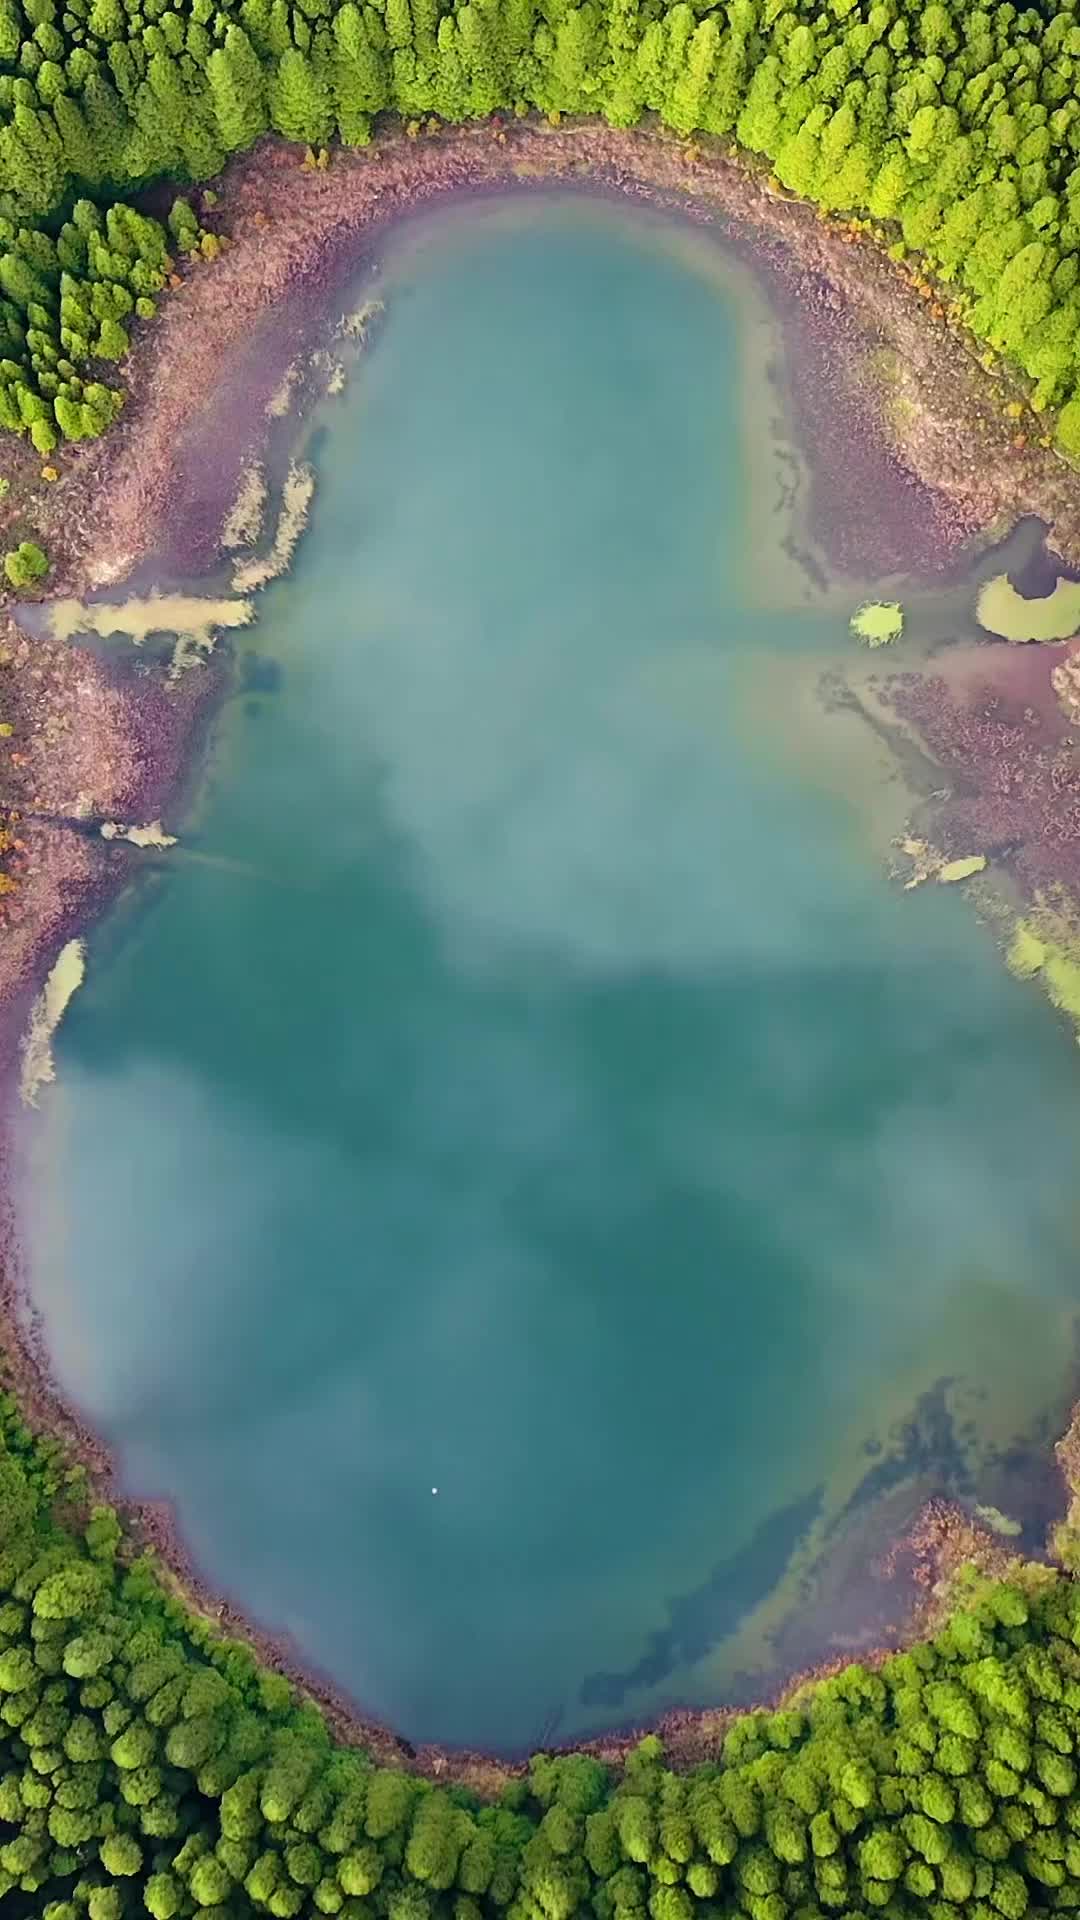 Lagoa do Canário: Aerial View of Nature's Beauty